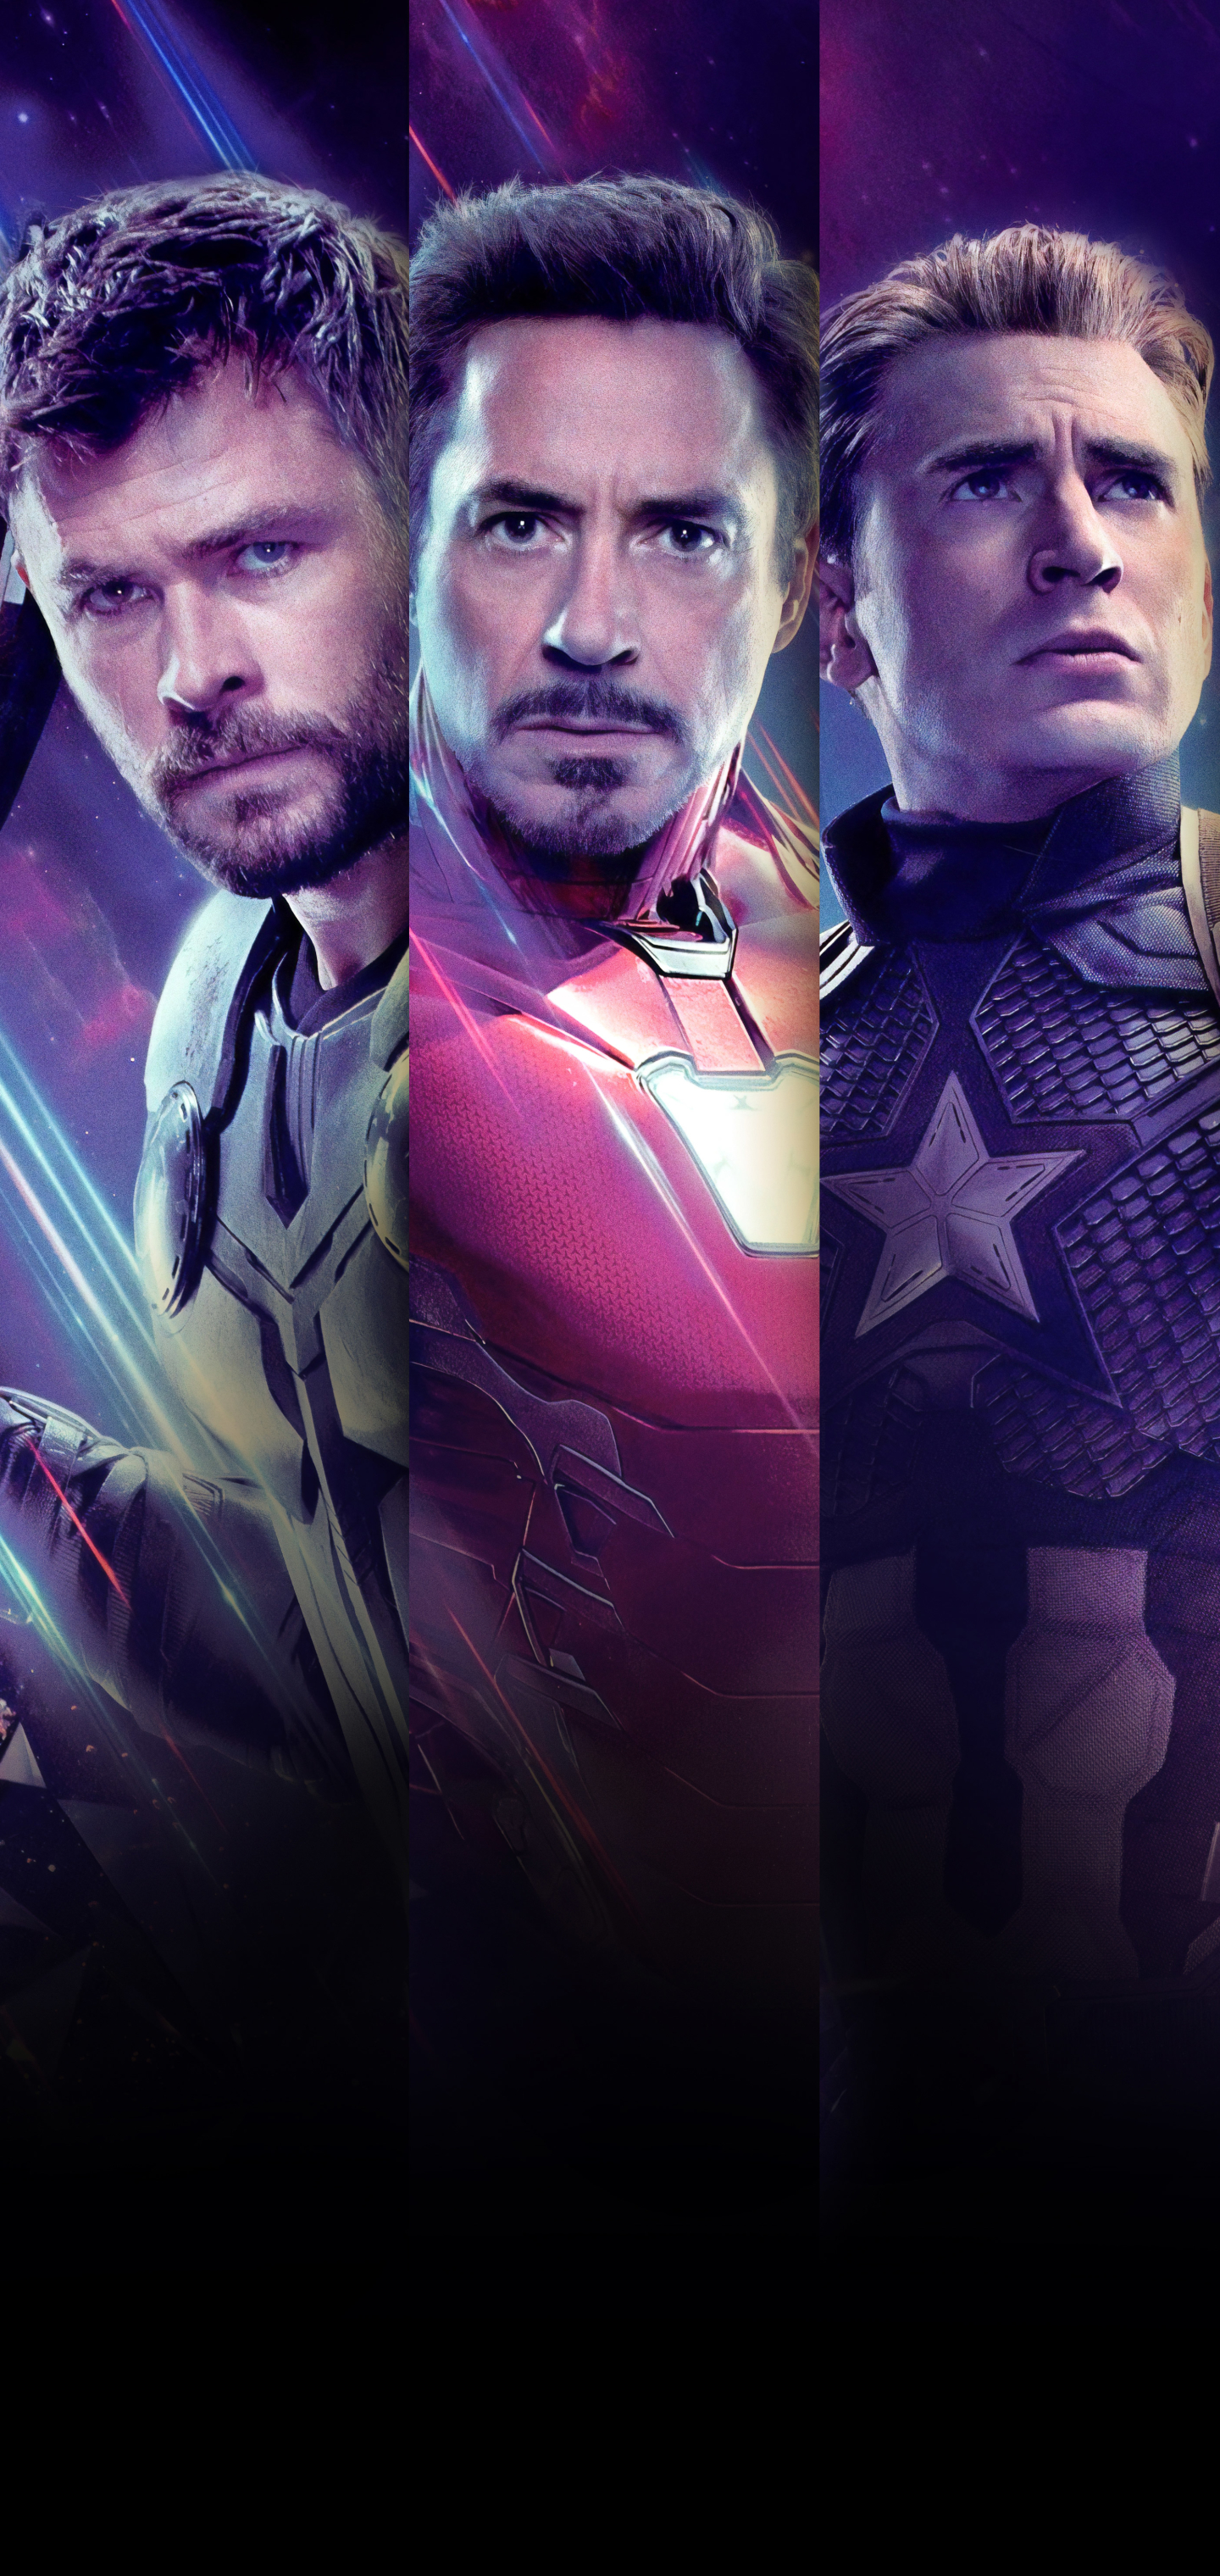 Download mobile wallpaper Iron Man, Captain America, Avengers, Robert Downey Jr, Chris Evans, Movie, Tony Stark, Thor, The Avengers, Chris Hemsworth, Avengers Endgame for free.